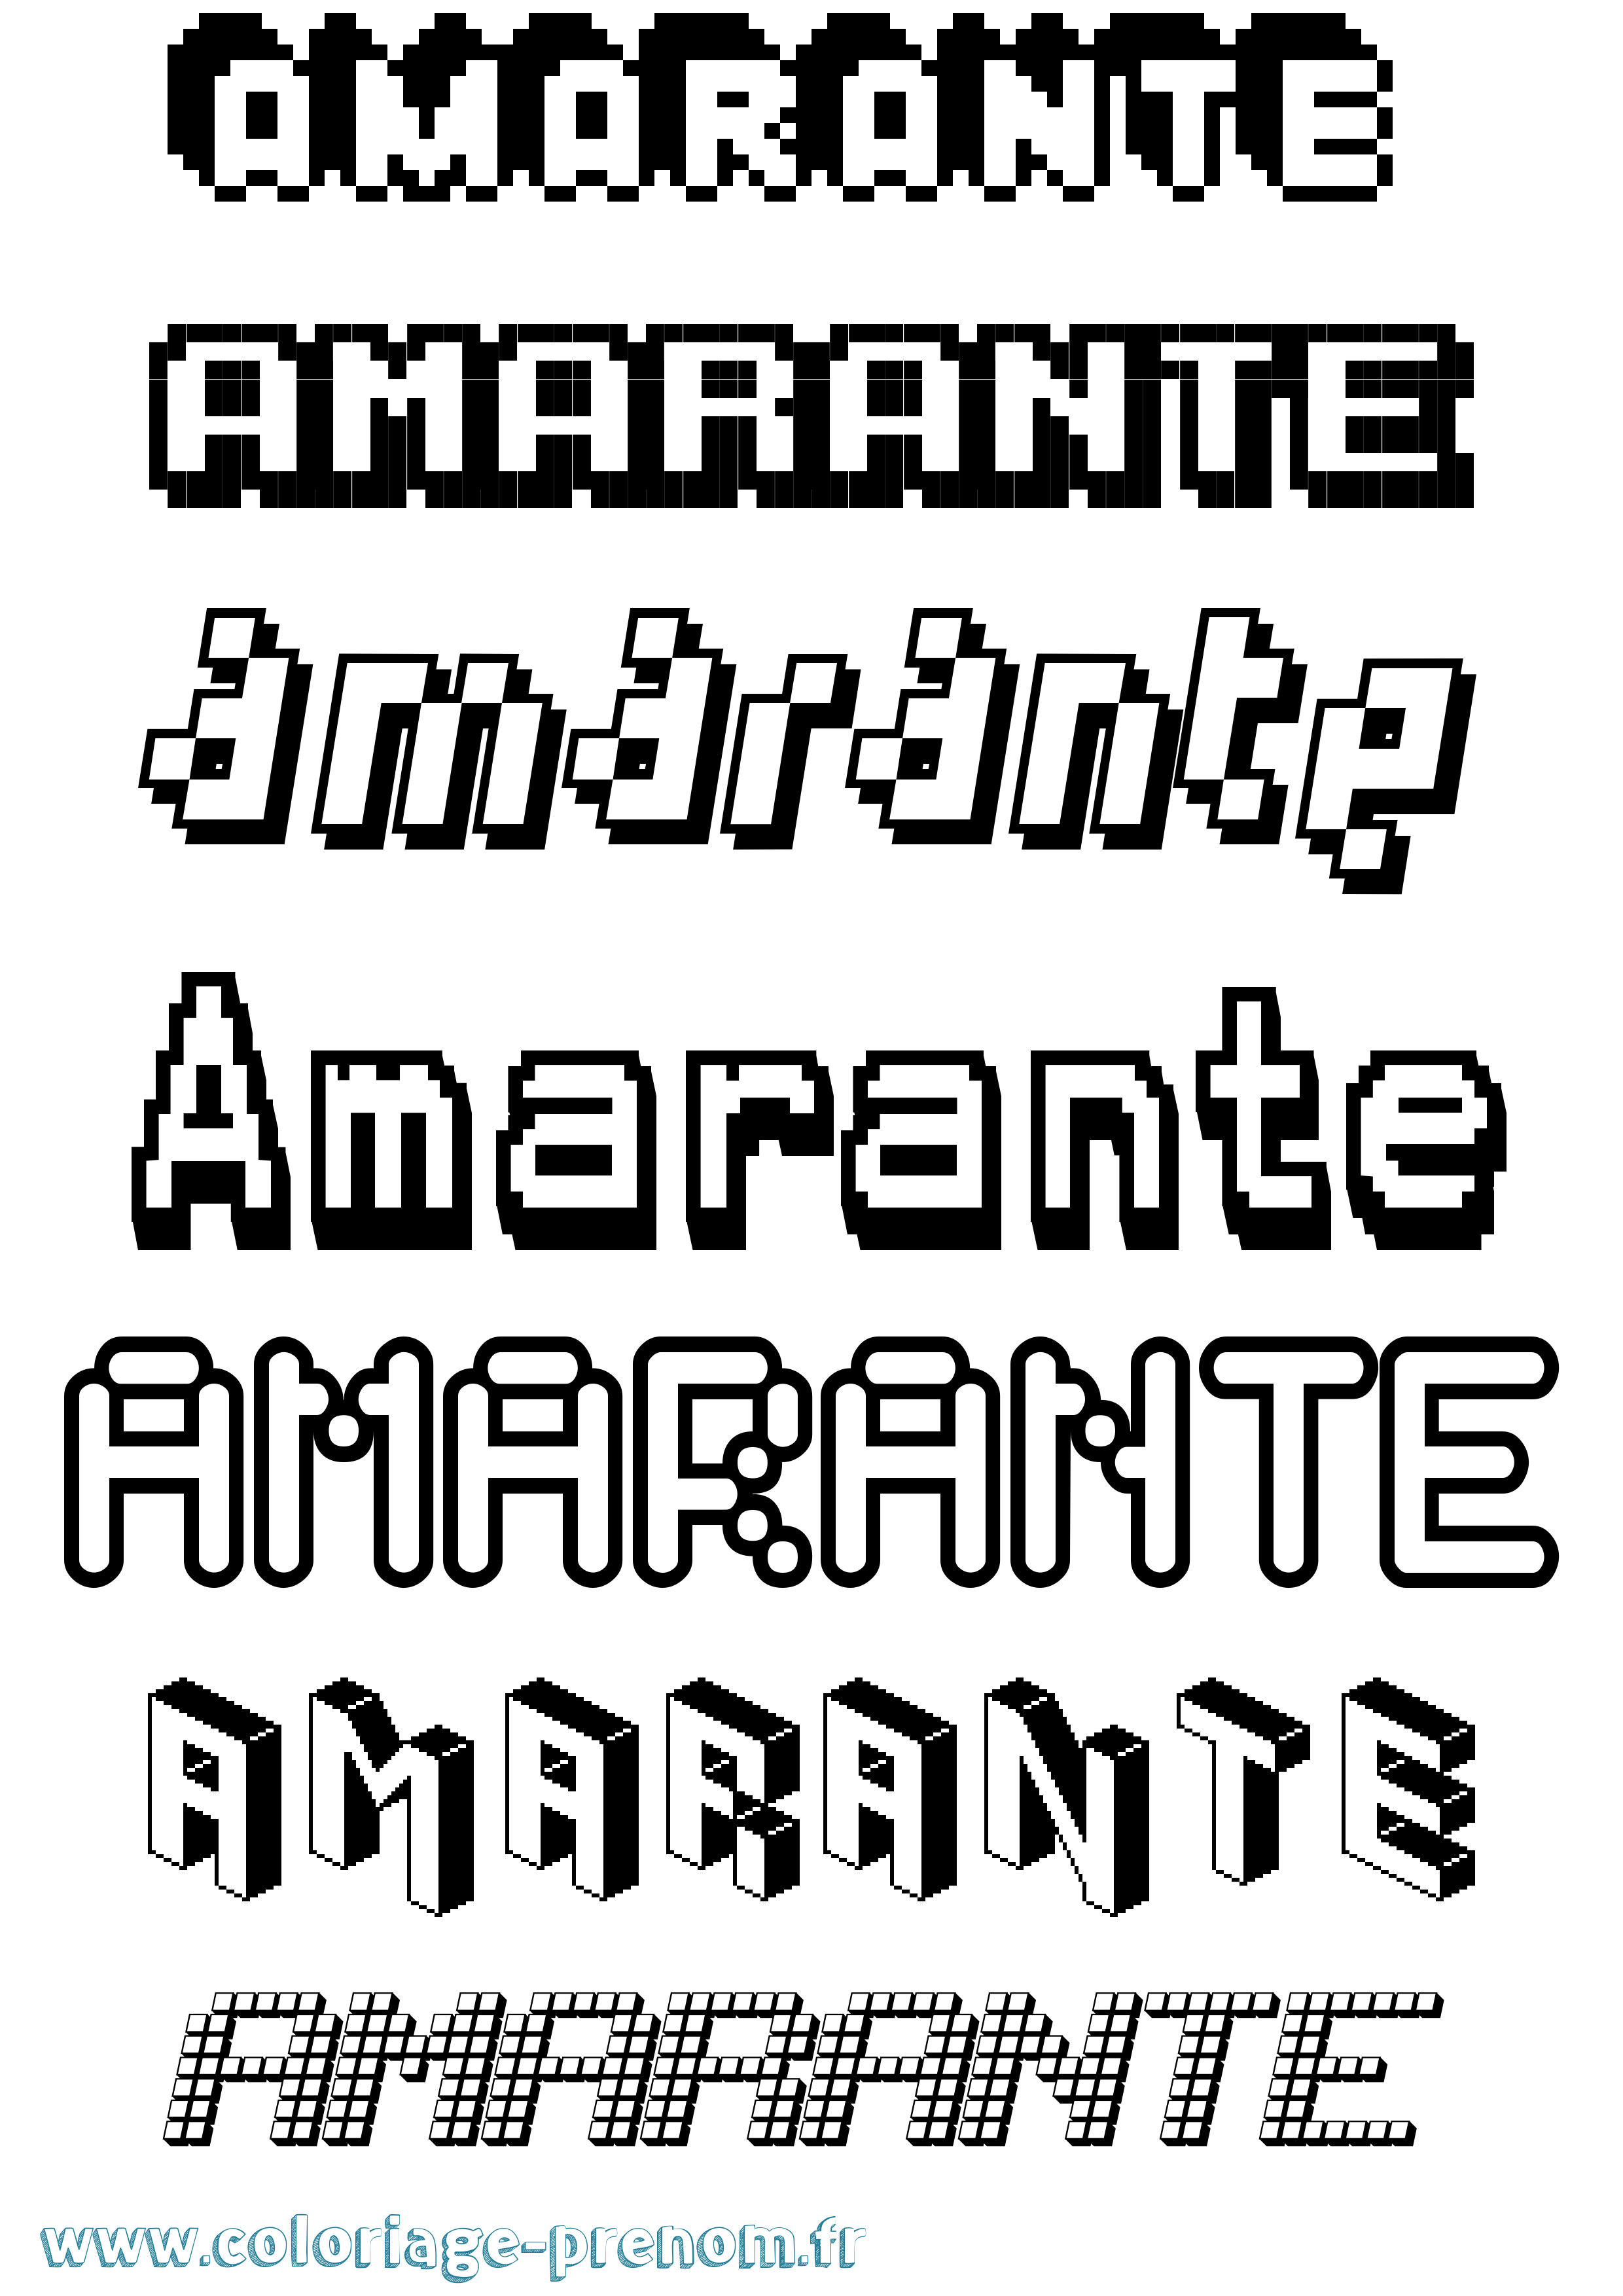 Coloriage prénom Amarante Pixel